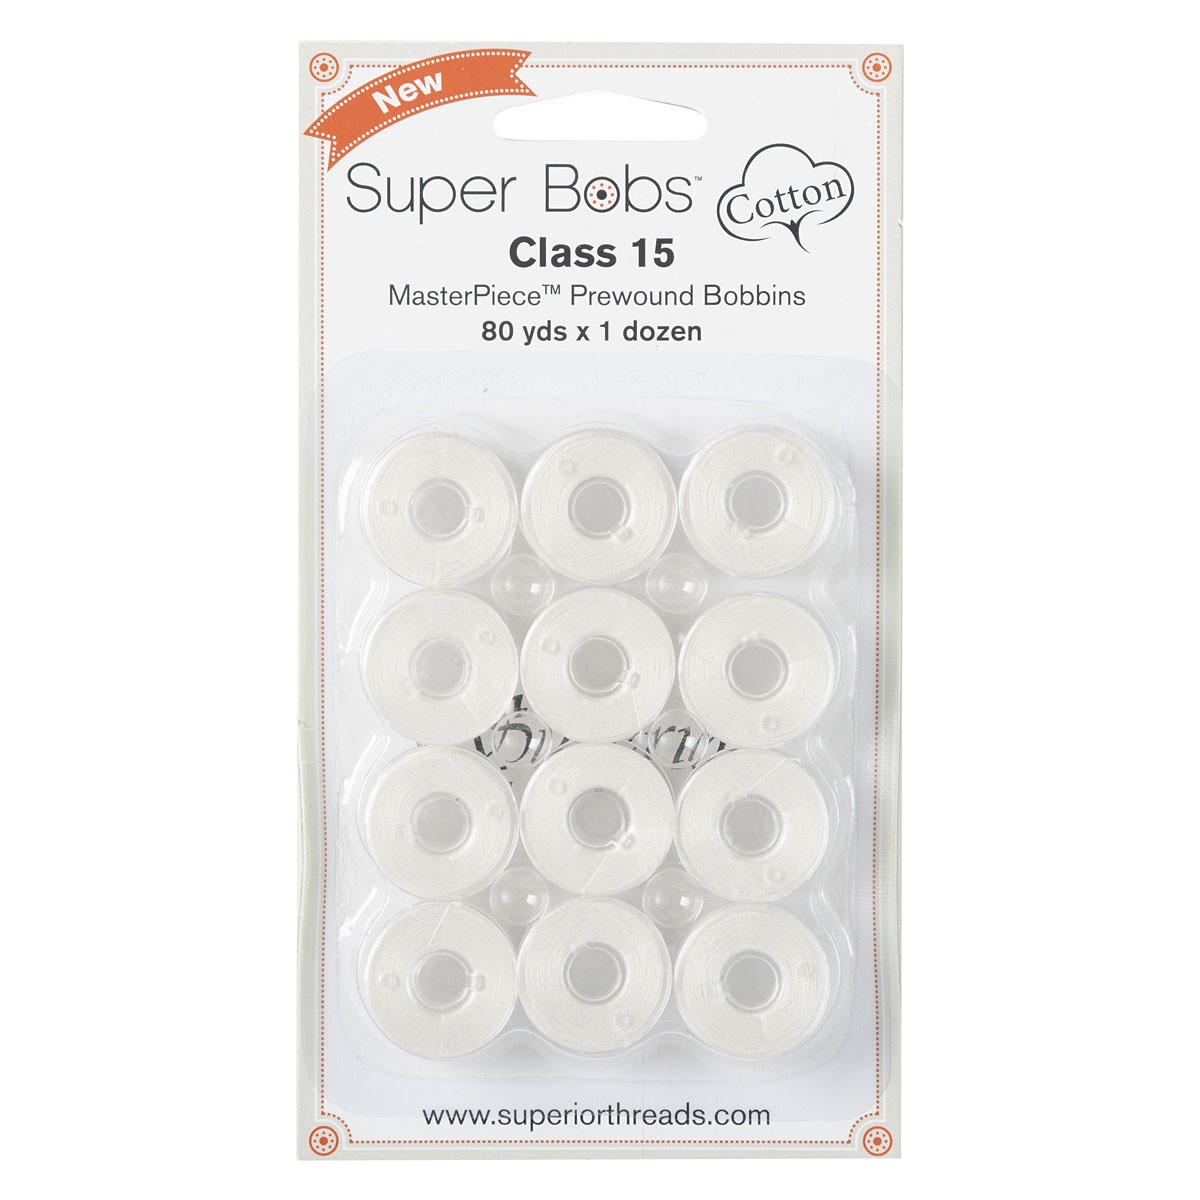 Super Bobs Cotton Class 15 Bobbin - Parchment